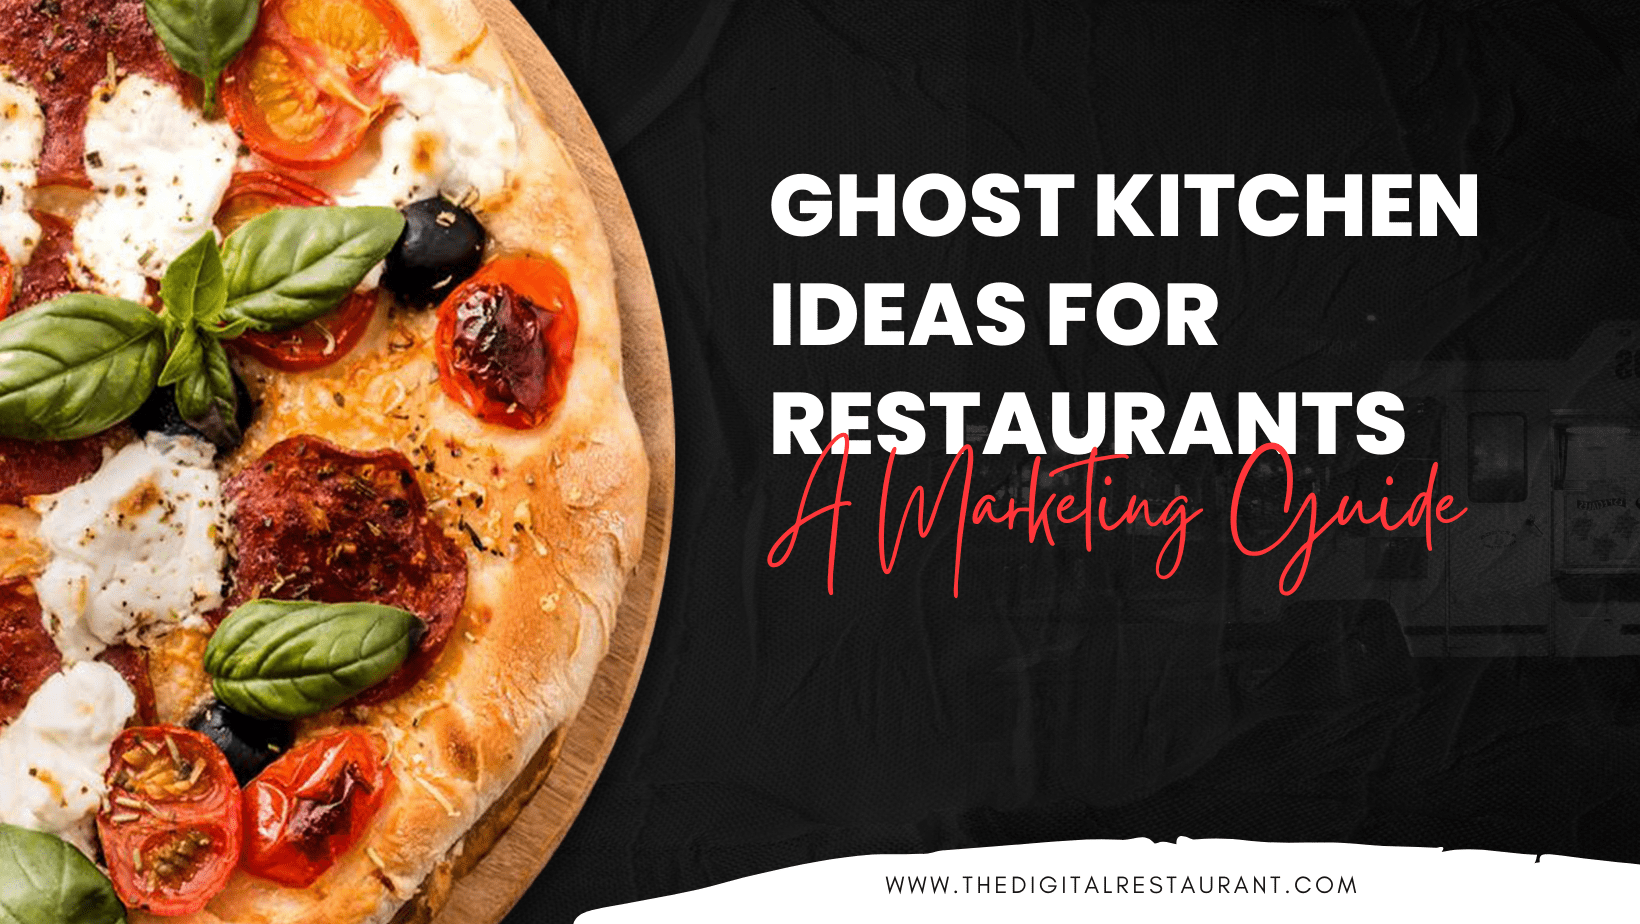 Ghost Kitchen Ideas for Restaurants